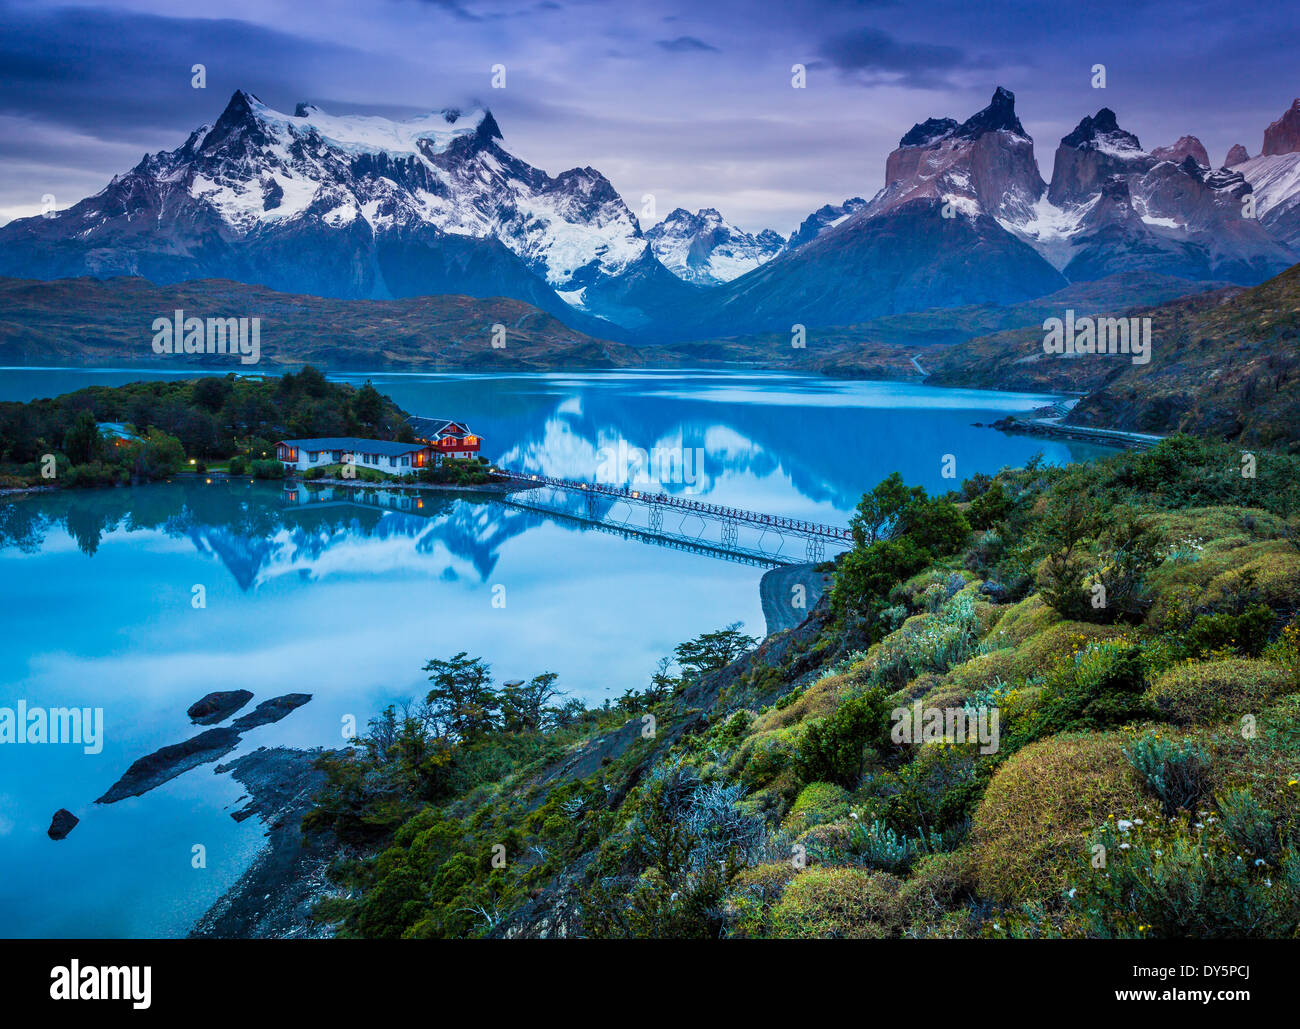 Lago Pehoe im Nationalpark Torres del Paine, chilenischen Teil Patagoniens Stockfoto